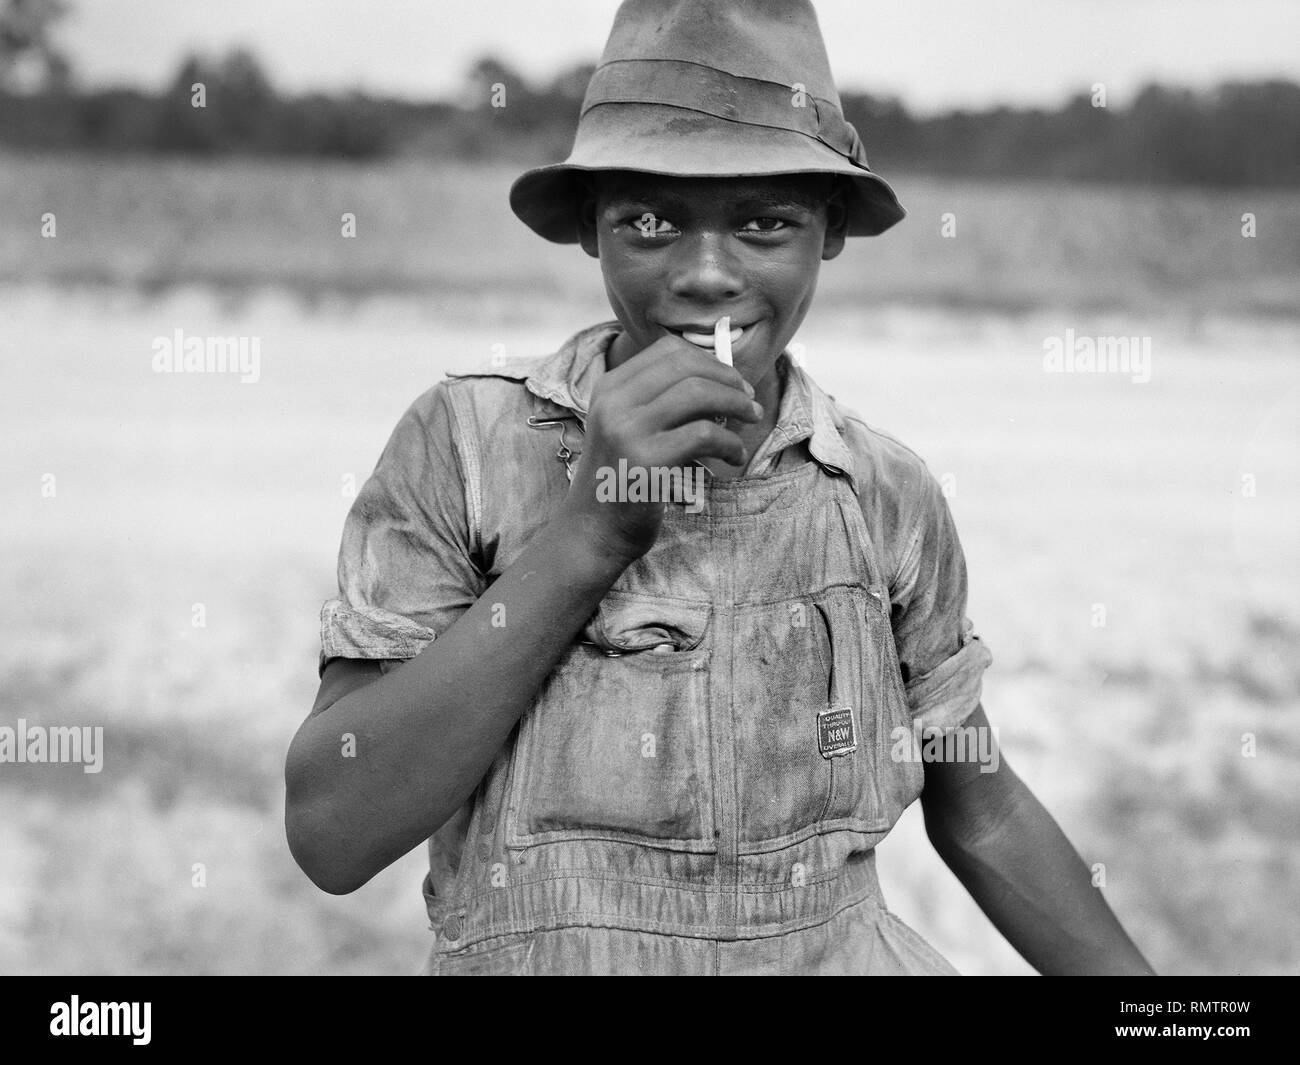 Brustbild von lächelnden Teenager in ländlicher Umgebung, Florenz County, South Carolina, USA, Farm Security Administration, 1938 Stockfoto